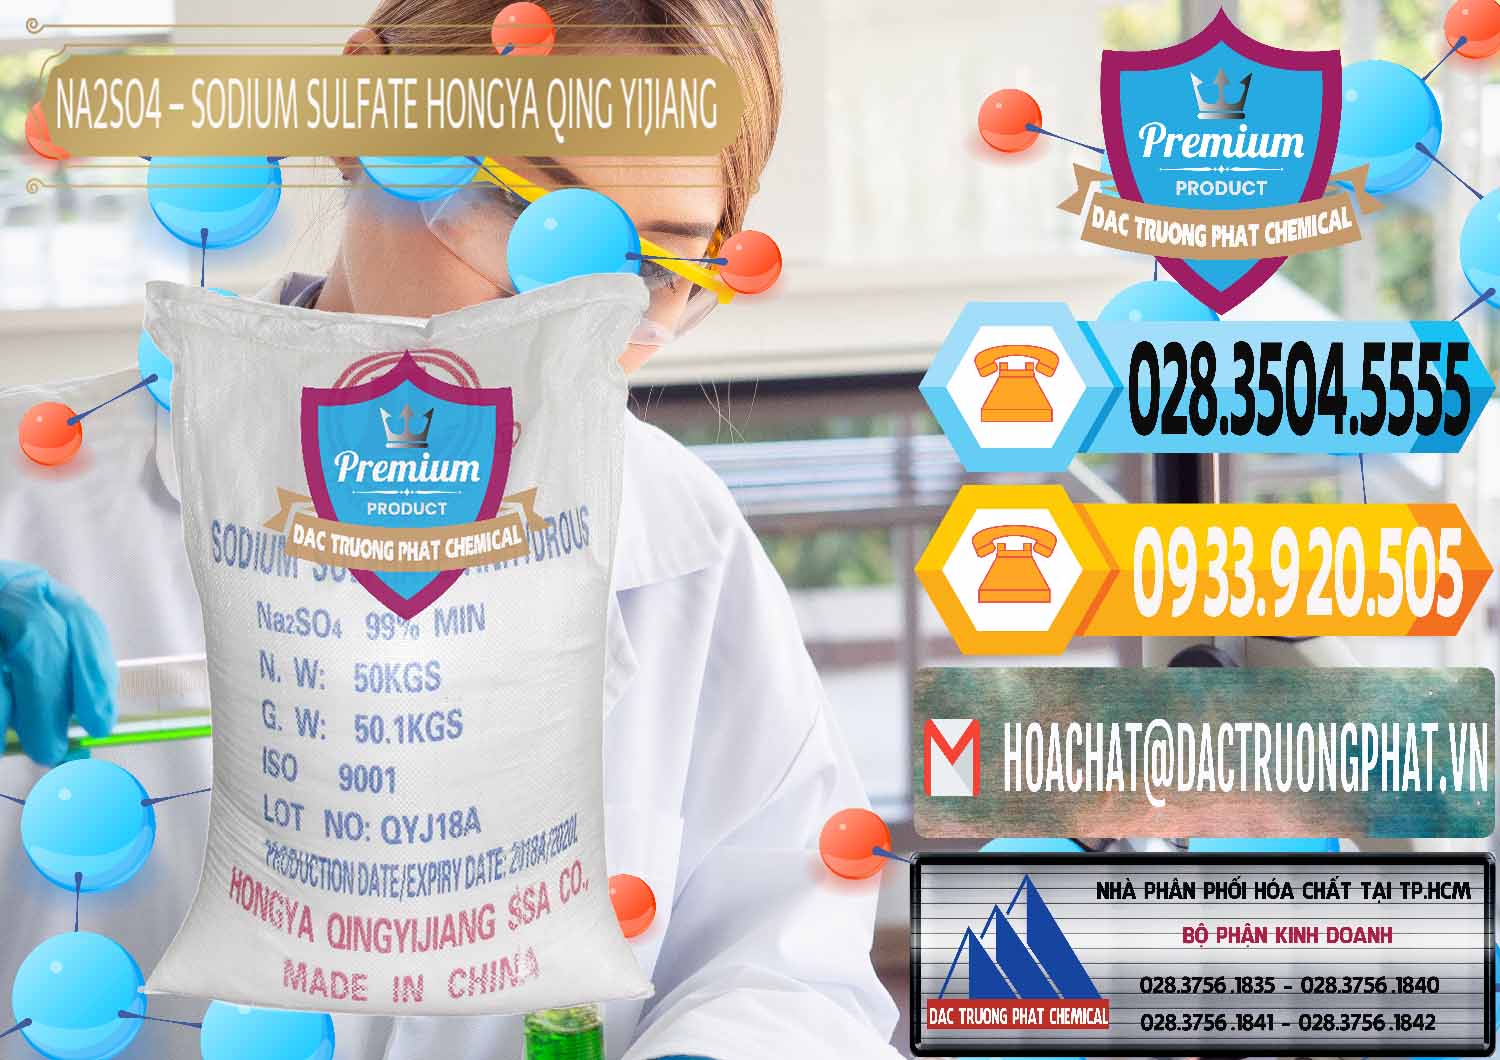 Cty chuyên cung cấp & bán Sodium Sulphate - Muối Sunfat Na2SO4 Logo Cánh Bườm Hongya Qing Yi Trung Quốc China - 0098 - Bán - cung cấp hóa chất tại TP.HCM - hoachattayrua.net